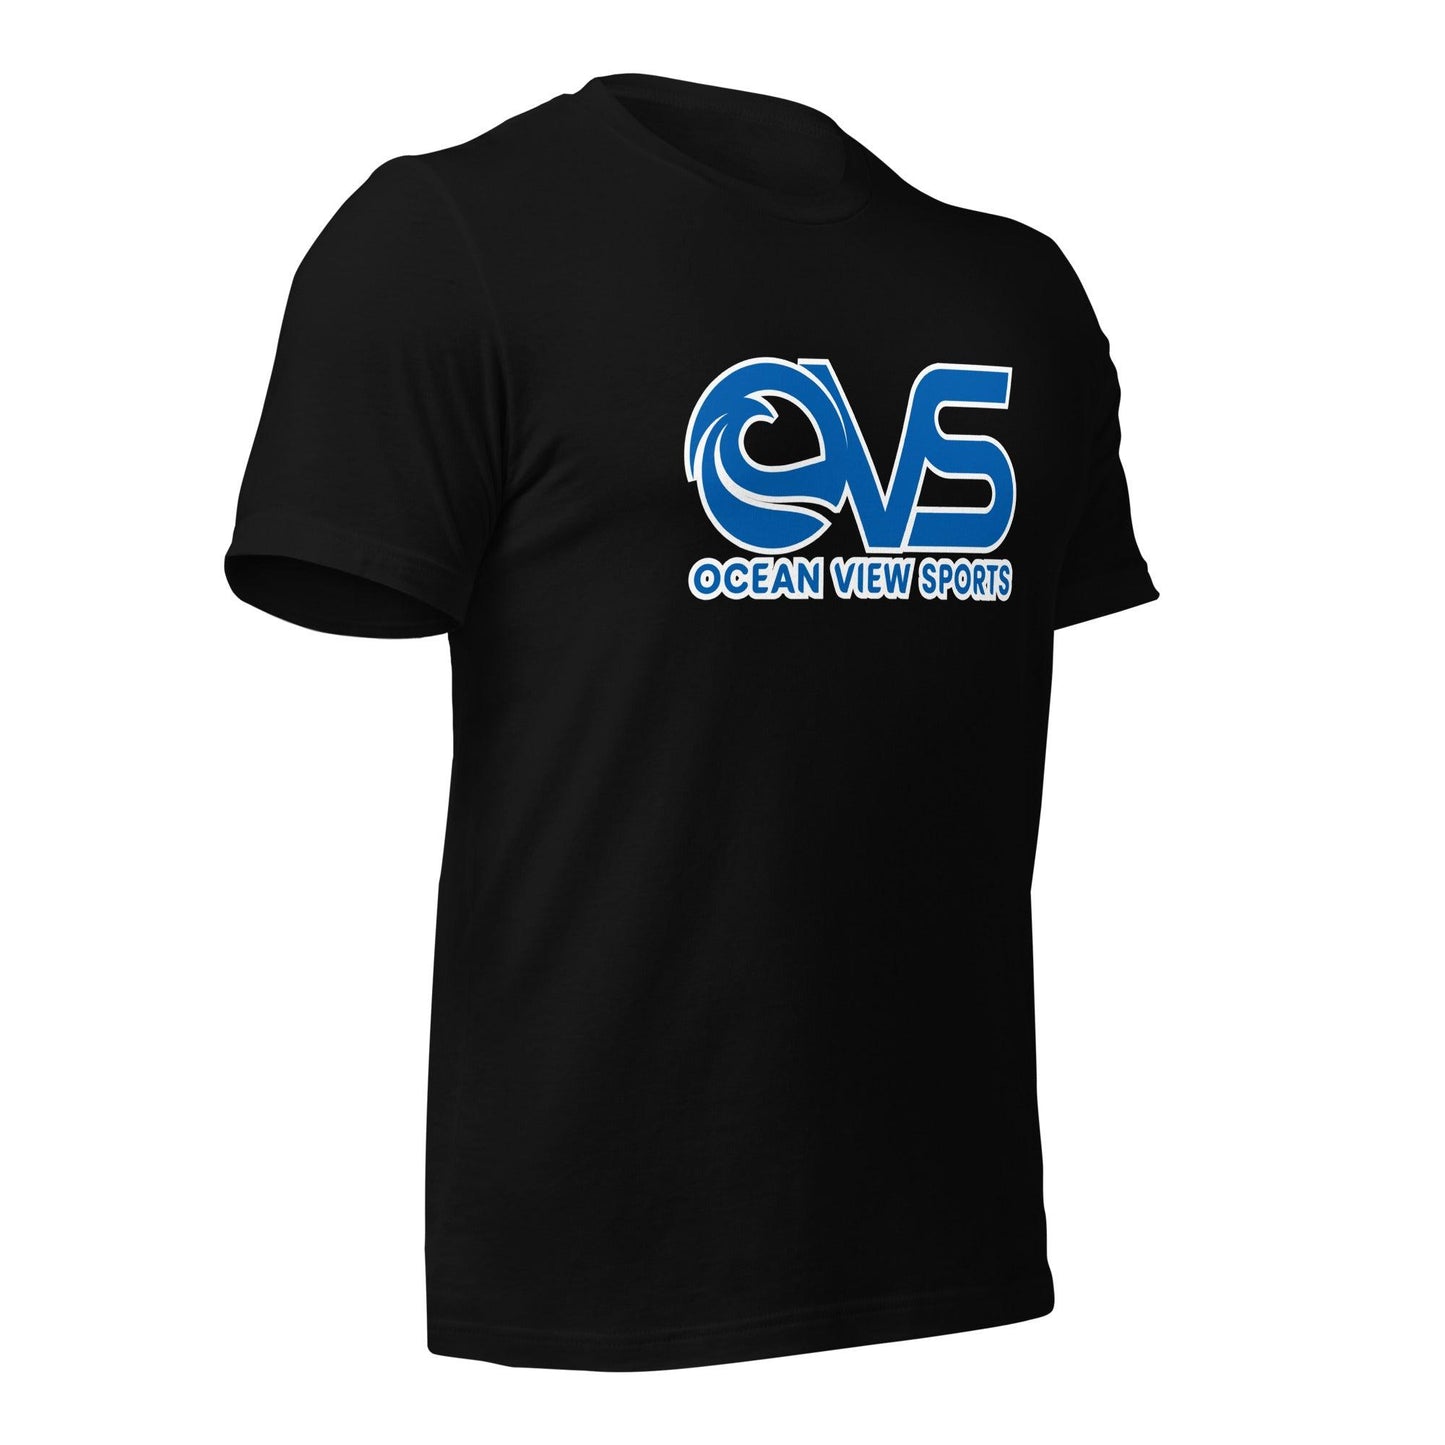 Bryan Miller "Ocean View Sports" t-shirt - Fan Arch